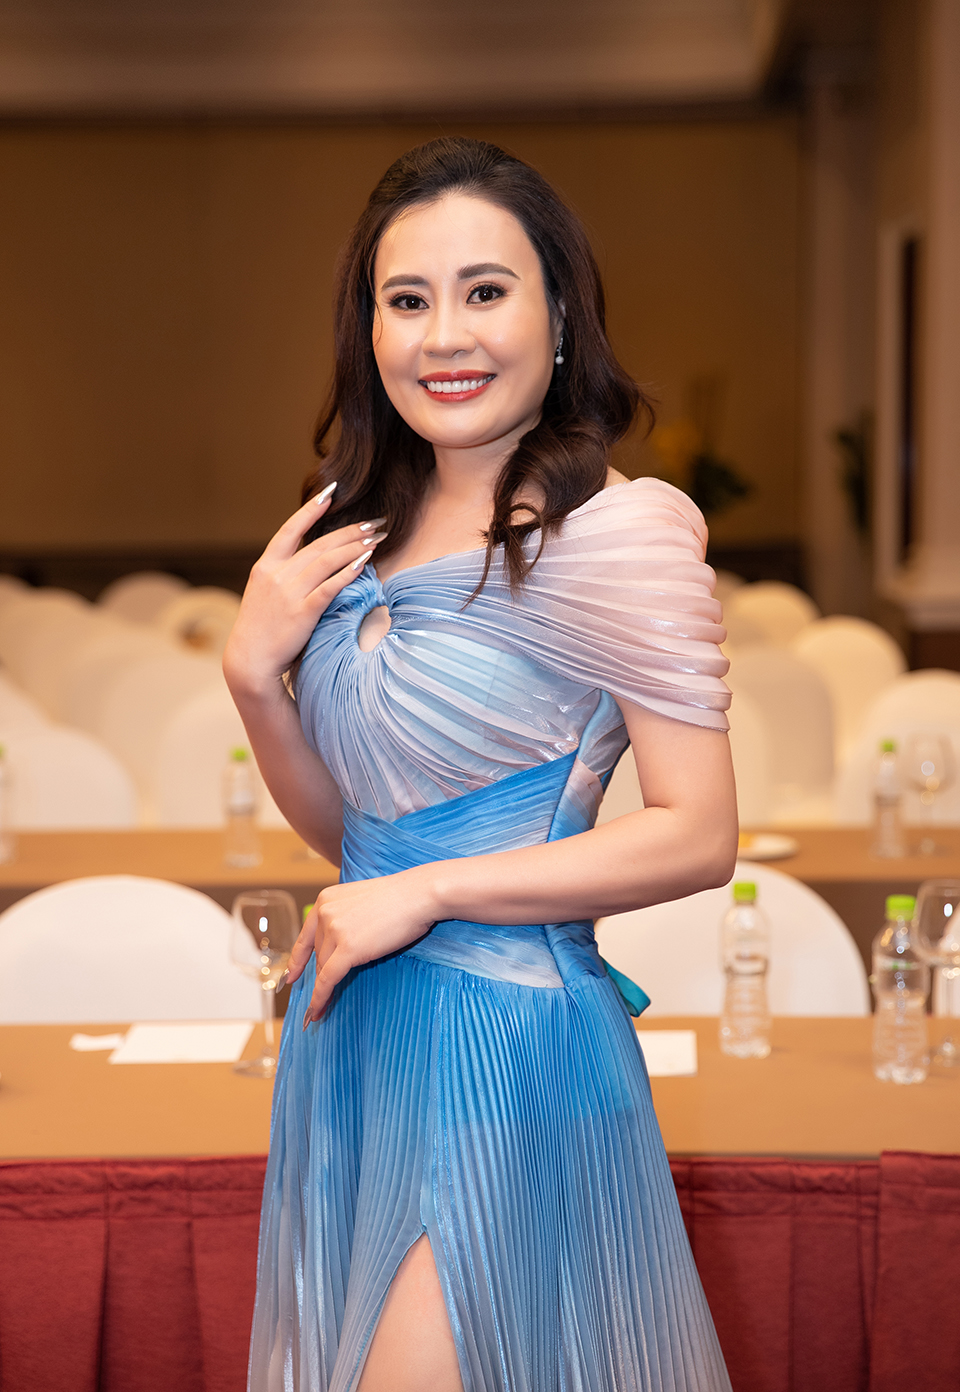 Diễn viên Kim Oanh “Về nhà đi con” được săn đón sau khi đăng quang Hoa hậu - 1